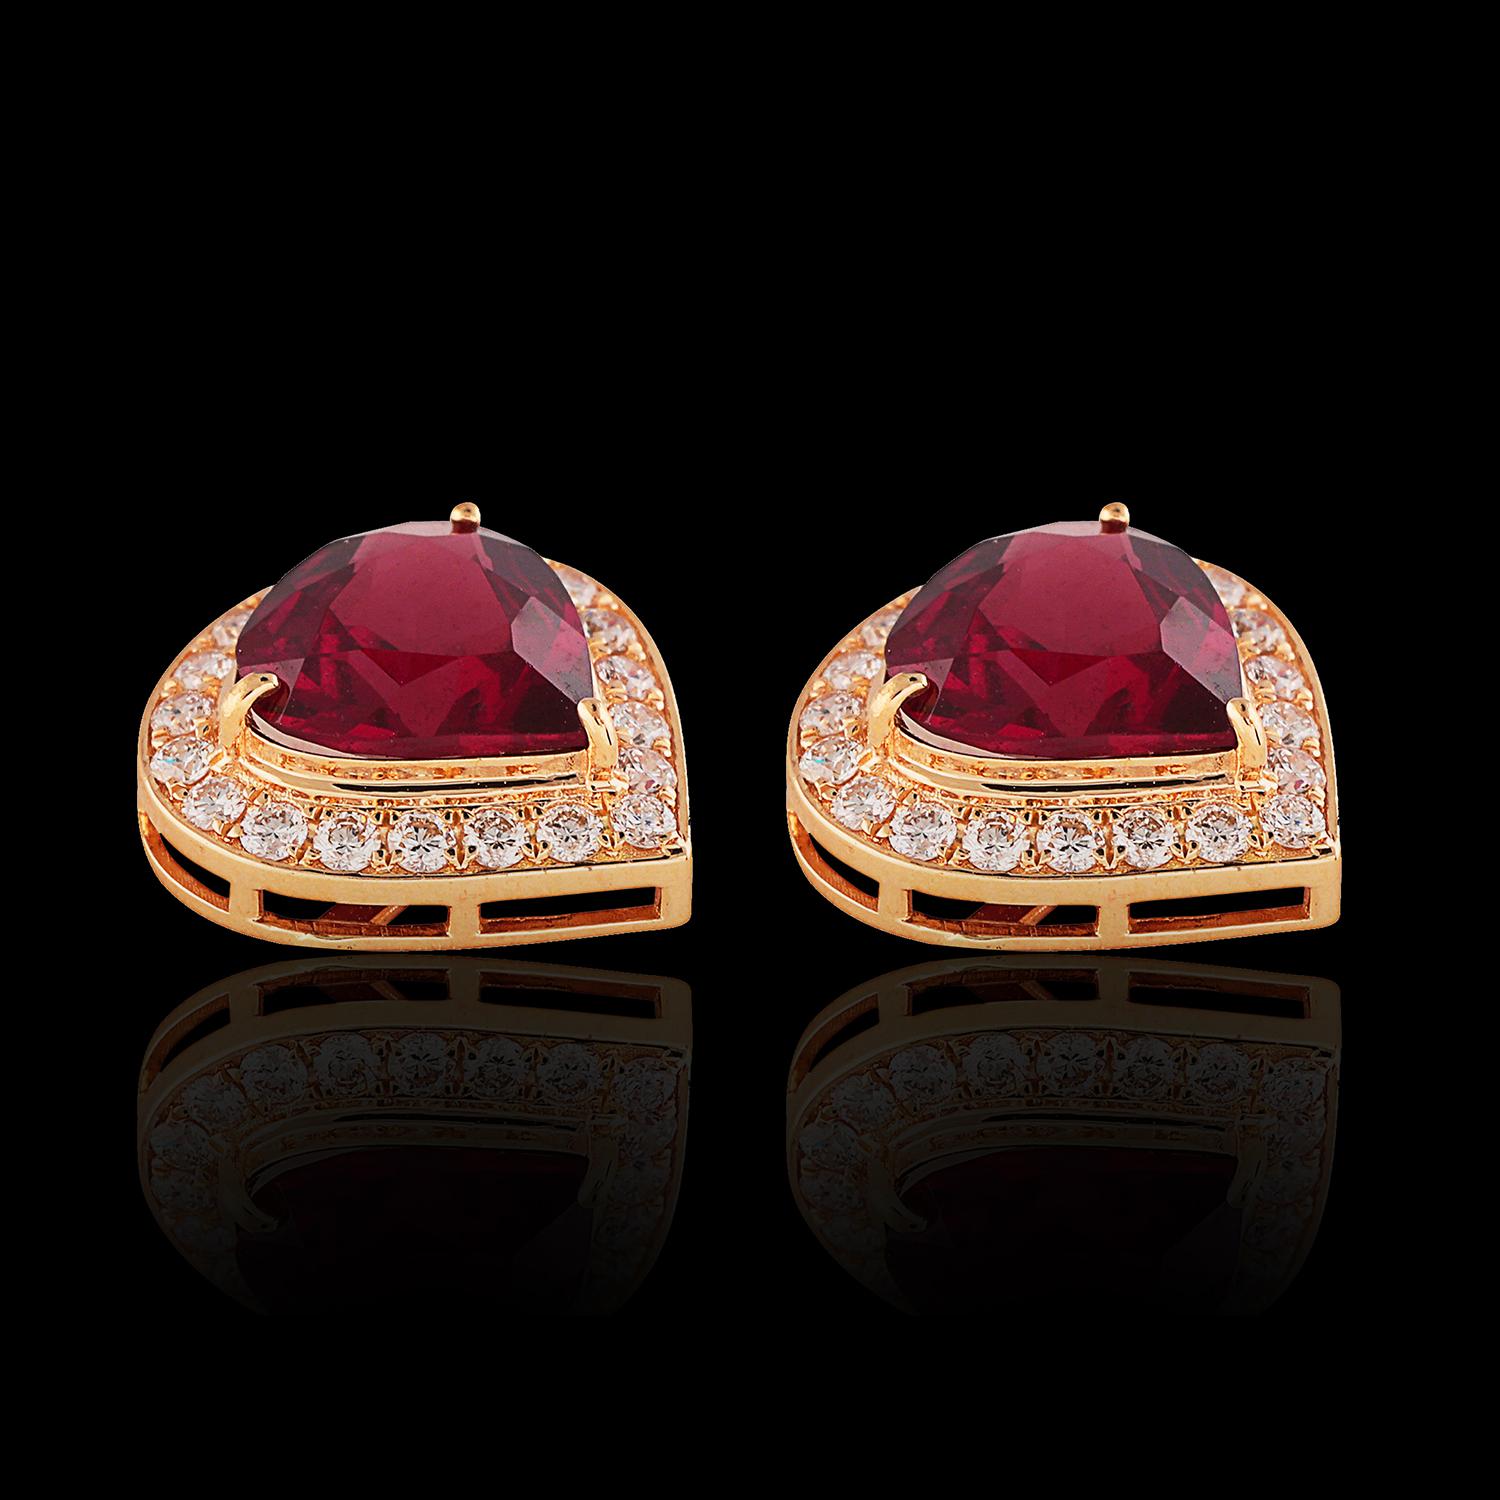 18kt Gold Garnet & Diamond Stud Earrings In New Condition For Sale In London, W1U 2JG